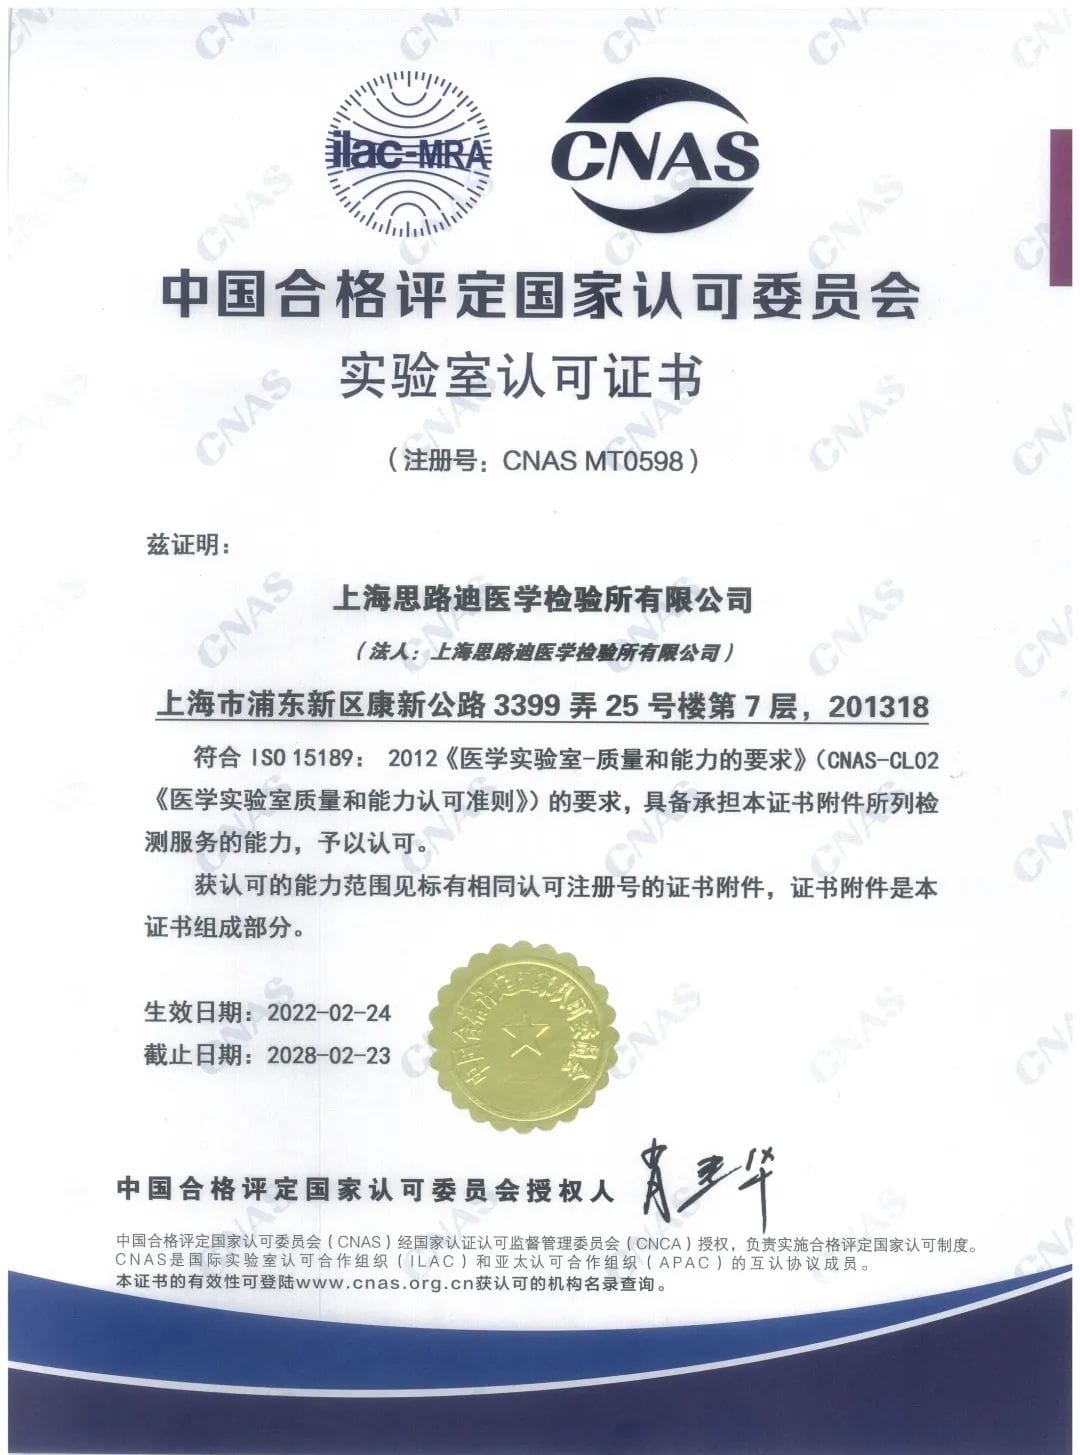 为患者精准诊断再添新动力｜上海思路迪医学检验所喜获CNAS颁发的ISO15189医学实验室认可证书